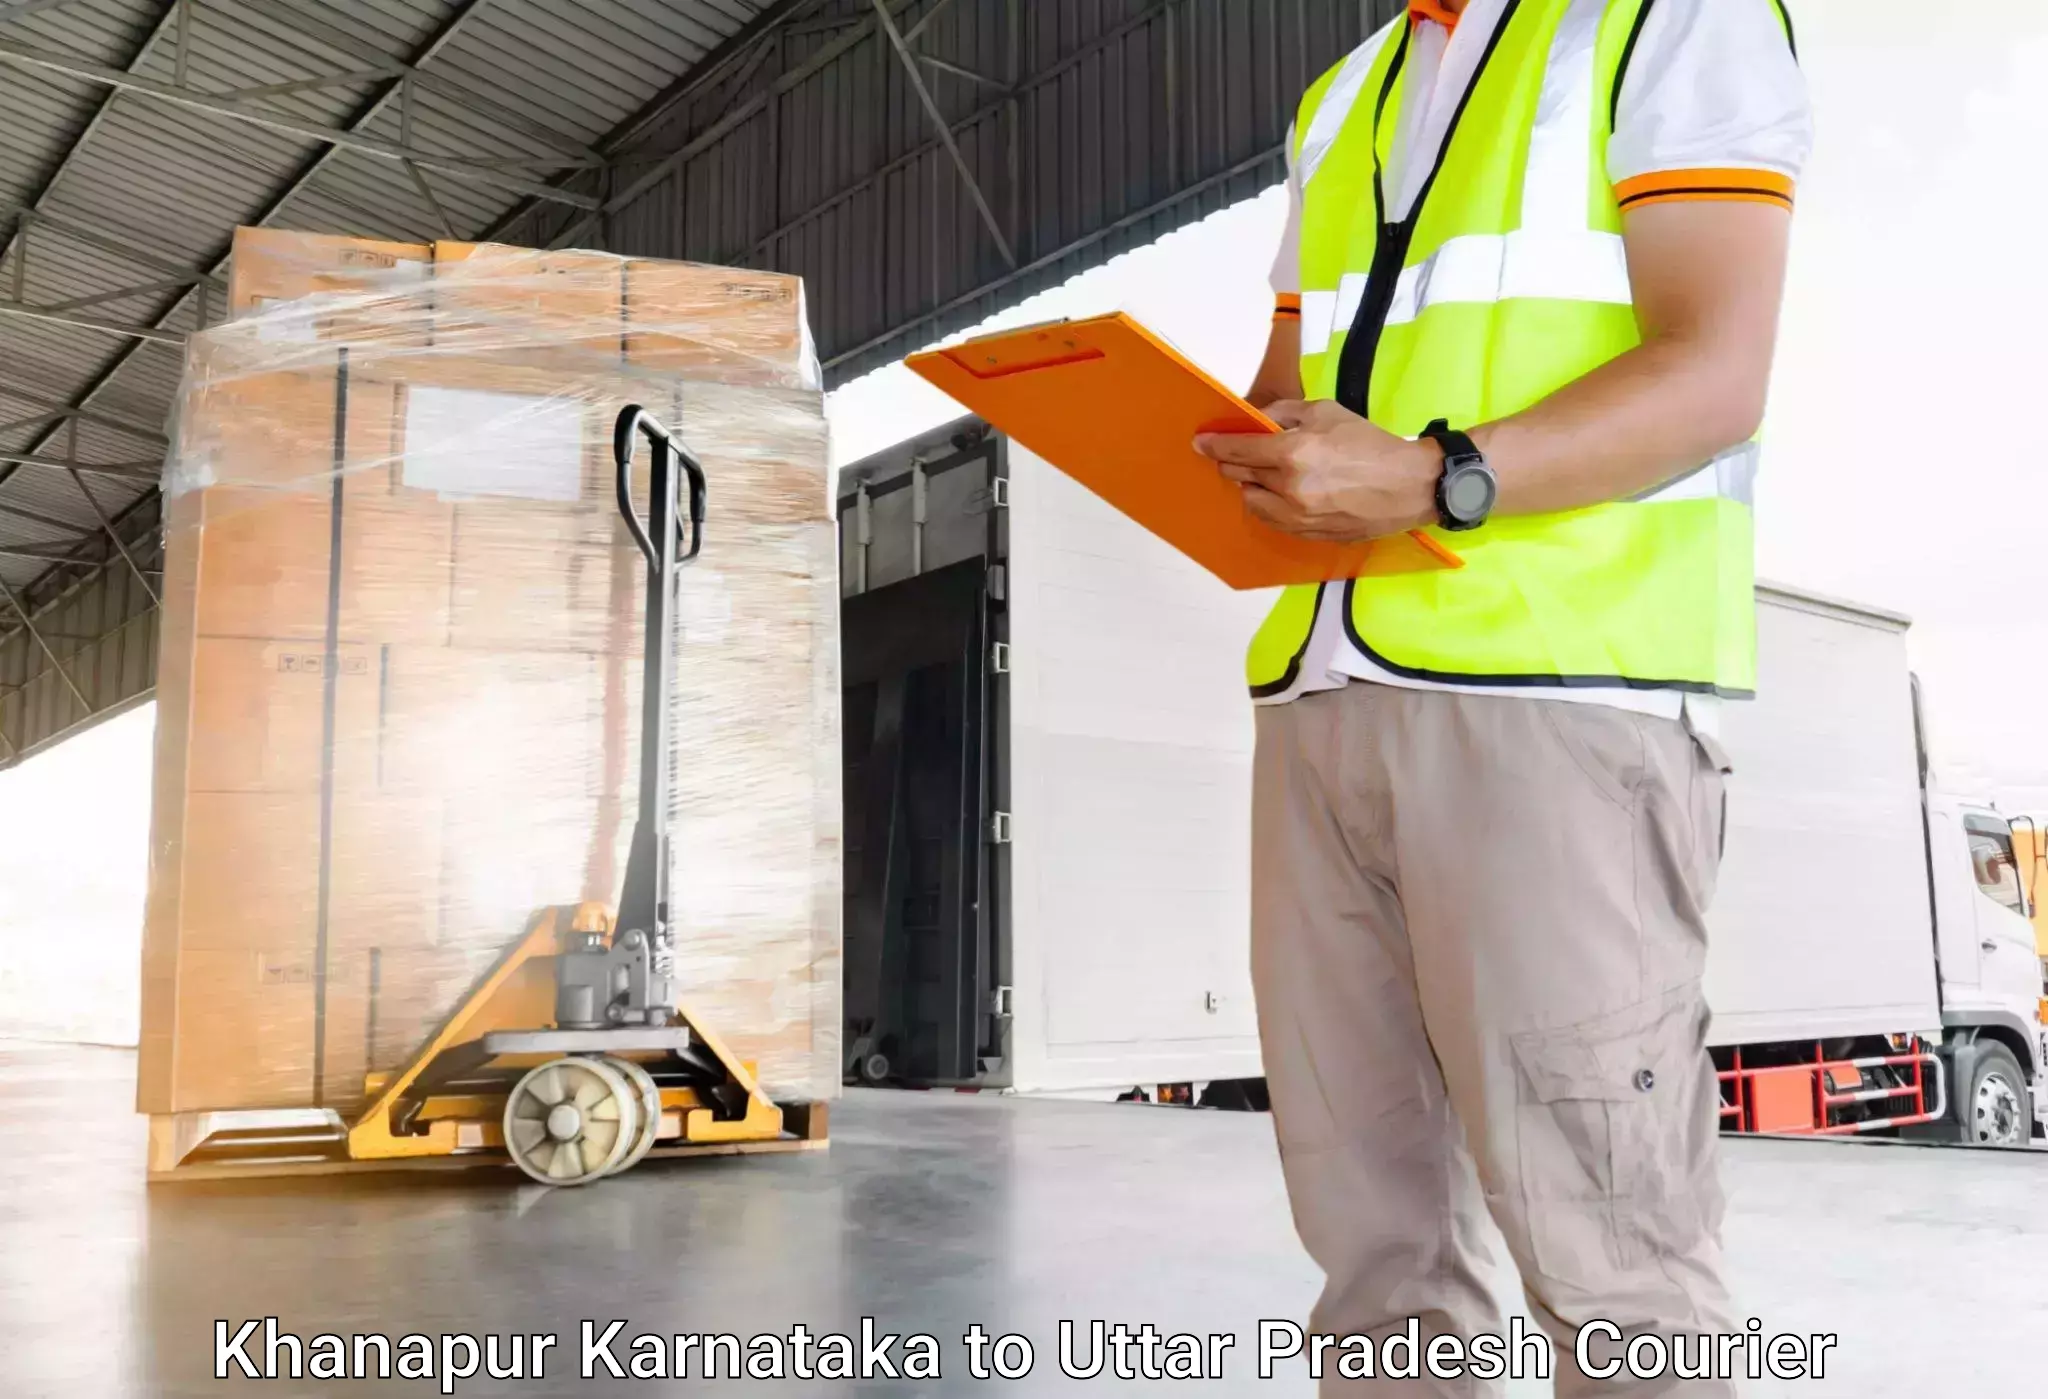 Emergency baggage service Khanapur Karnataka to Kauriram